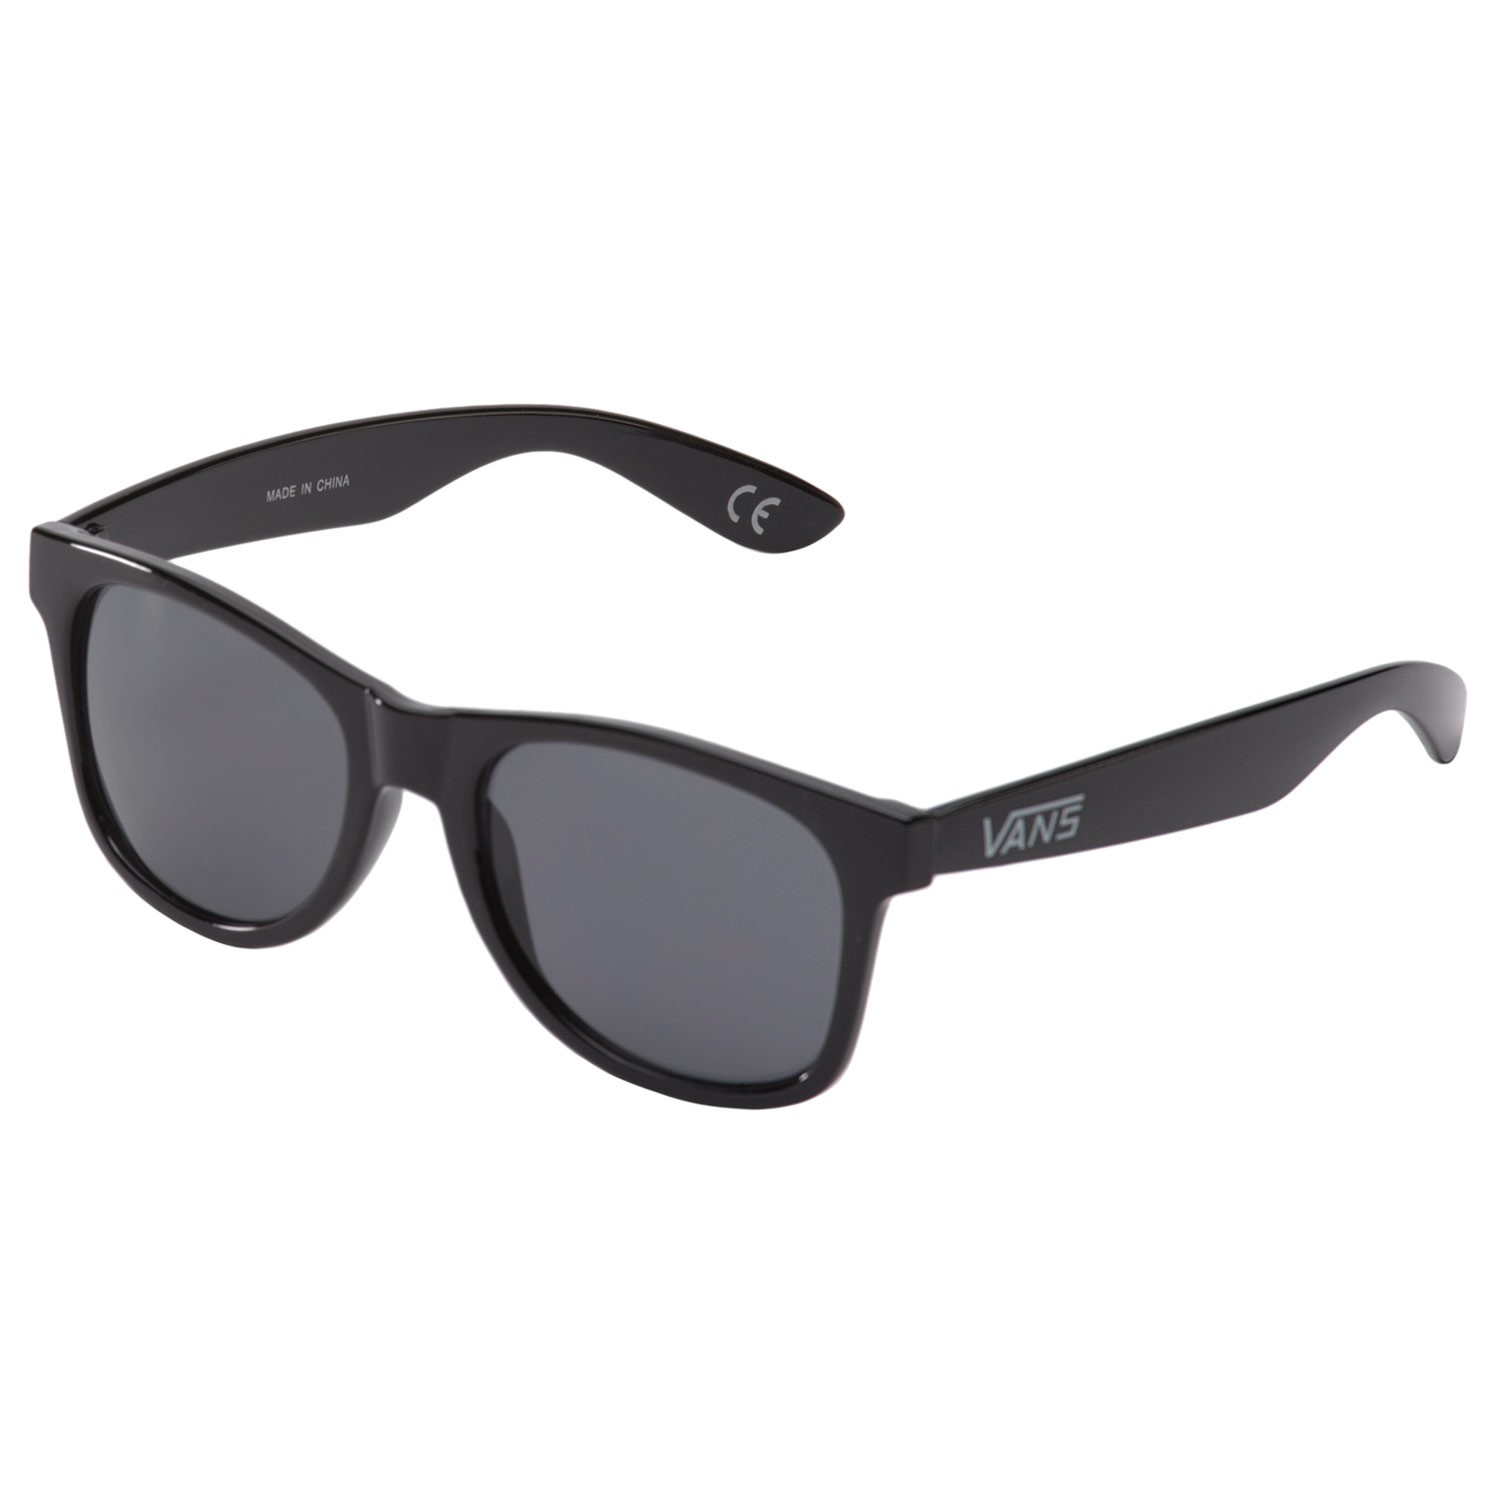 Sunglasses Vans Spicoli 4 Shades black 